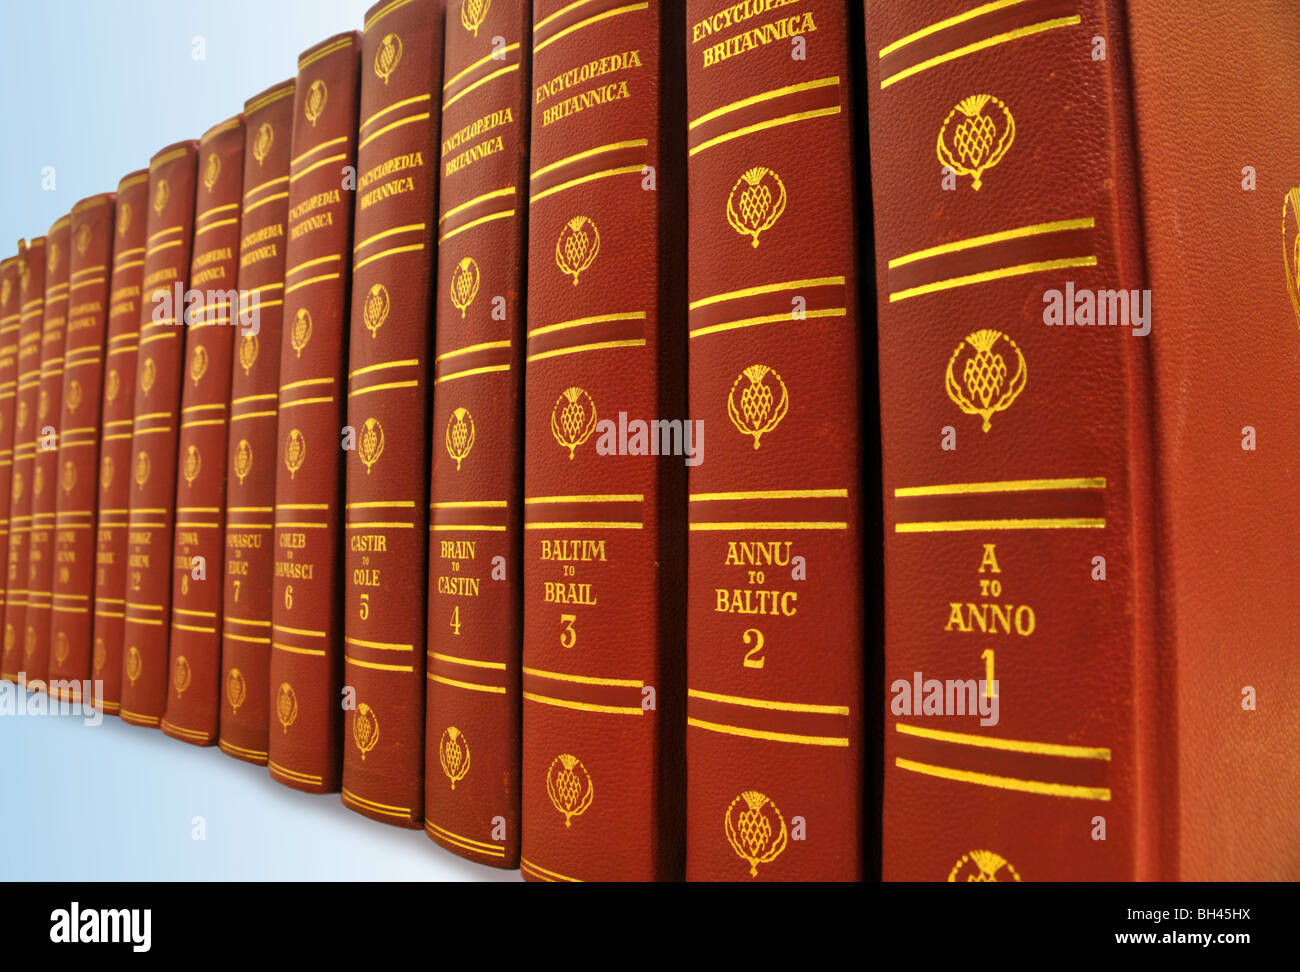 Une rangée de livres de l'encyclopédie Britannica. Banque D'Images